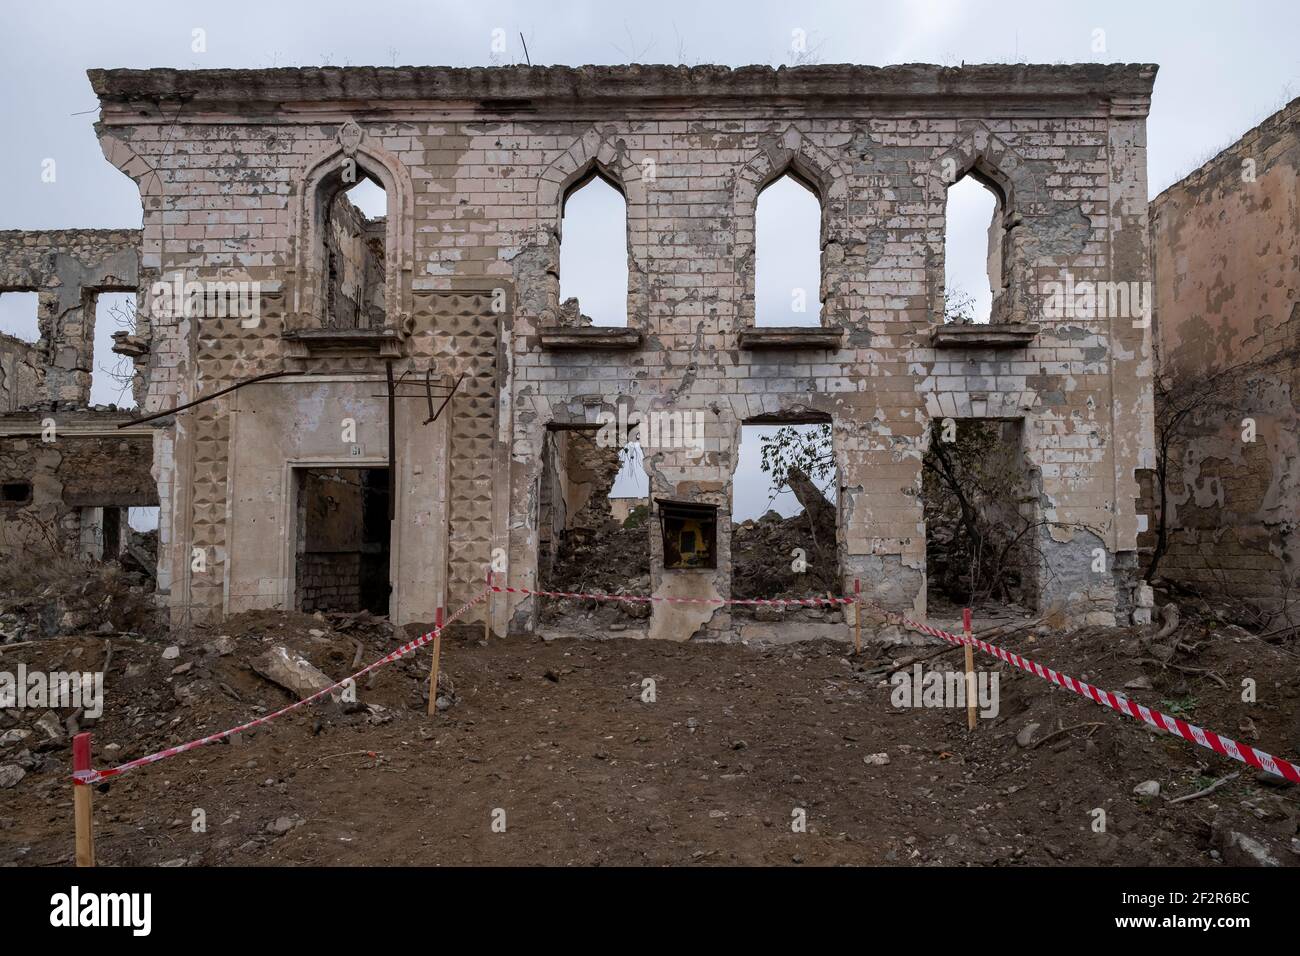 AGDAM, AZERBAÏDJAN - DÉCEMBRE 14 : ruines du centre culturel de la ville d'Agdam qui a été détruit par les forces arméniennes pendant la première guerre du Haut-Karabakh le 14 décembre 2020 à Agdam, Azerbaïdjan. La ville et son district avoisinant ont été retournés sous contrôle azerbaïdjanais dans le cadre d'un accord qui a mis fin à la guerre du Haut-Karabakh de 2020. Banque D'Images